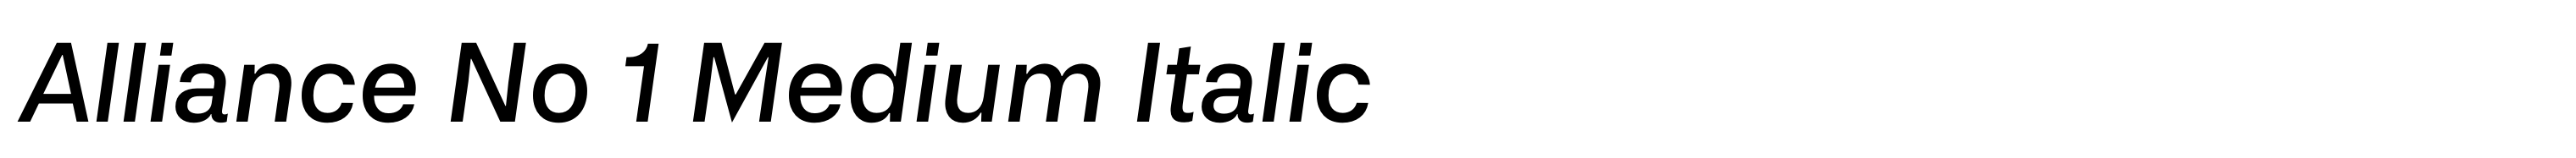 Alliance No 1 Medium Italic